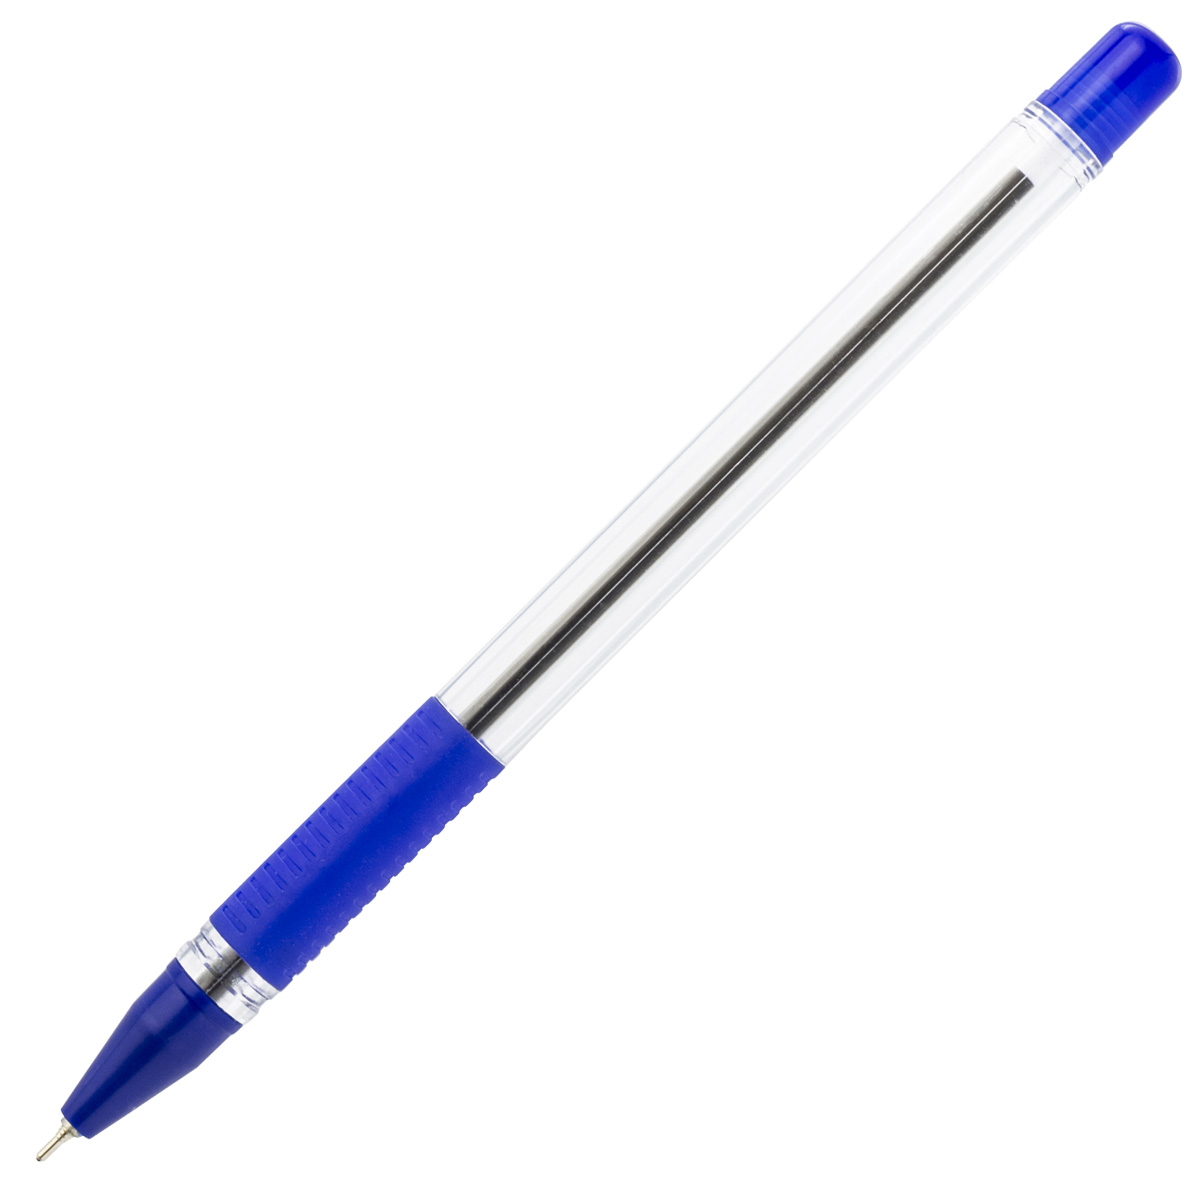 Ручка синяя красивая. Ручка Index шариковая ibp801/bu синяя. Ручка гелевая calligraph, прозрачный корпус, синяя, 0,5мм ,Index. Ручка шариковая Index ibp812. Ручка Index ibp602/bu синяя.